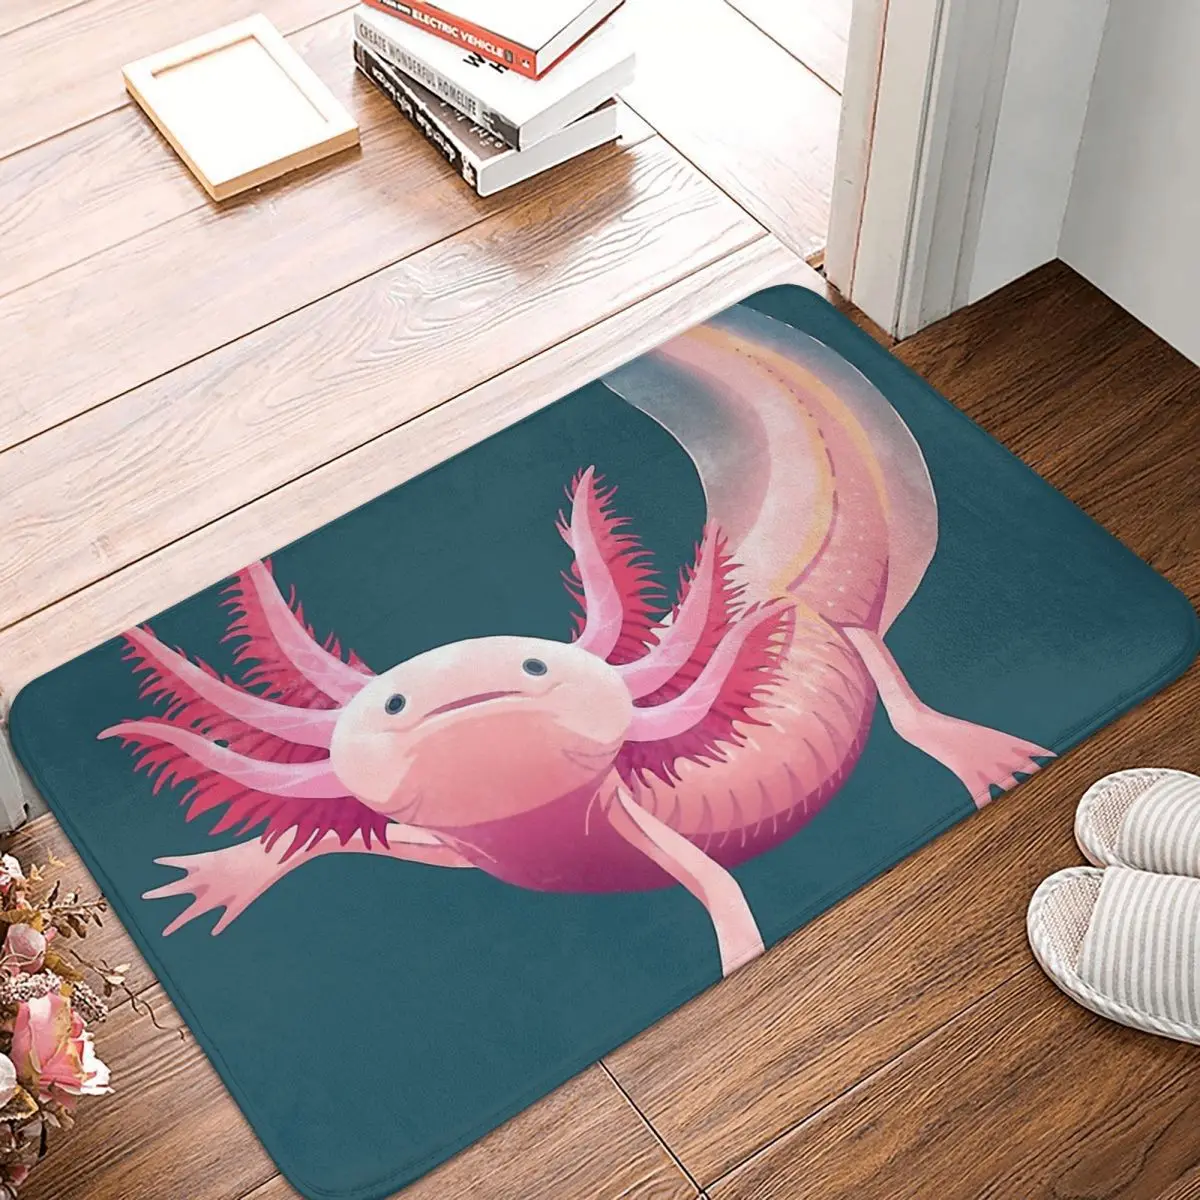 Axolotl Lover Walking Fish Bathroom Non-Slip Carpet Pink Bedroom Mat Welcome Doormat Floor Decor Rug